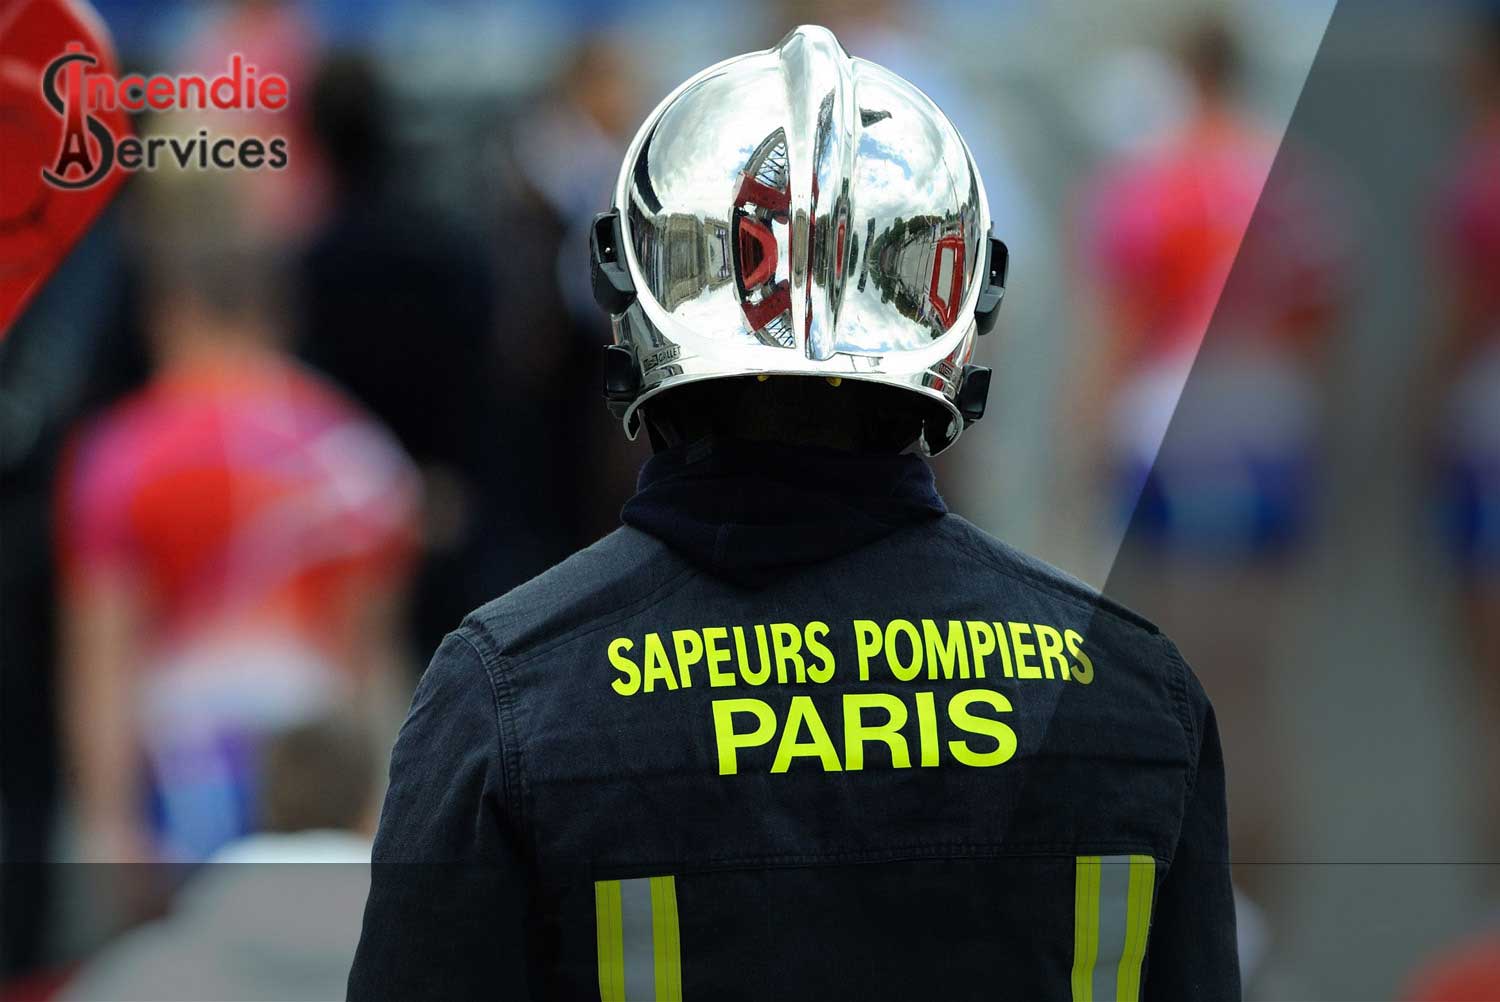 MAINTENANCE EXTINCTEUR PARIS 12 - Entreprise Certifiée | Incendie Services à Paris 75012